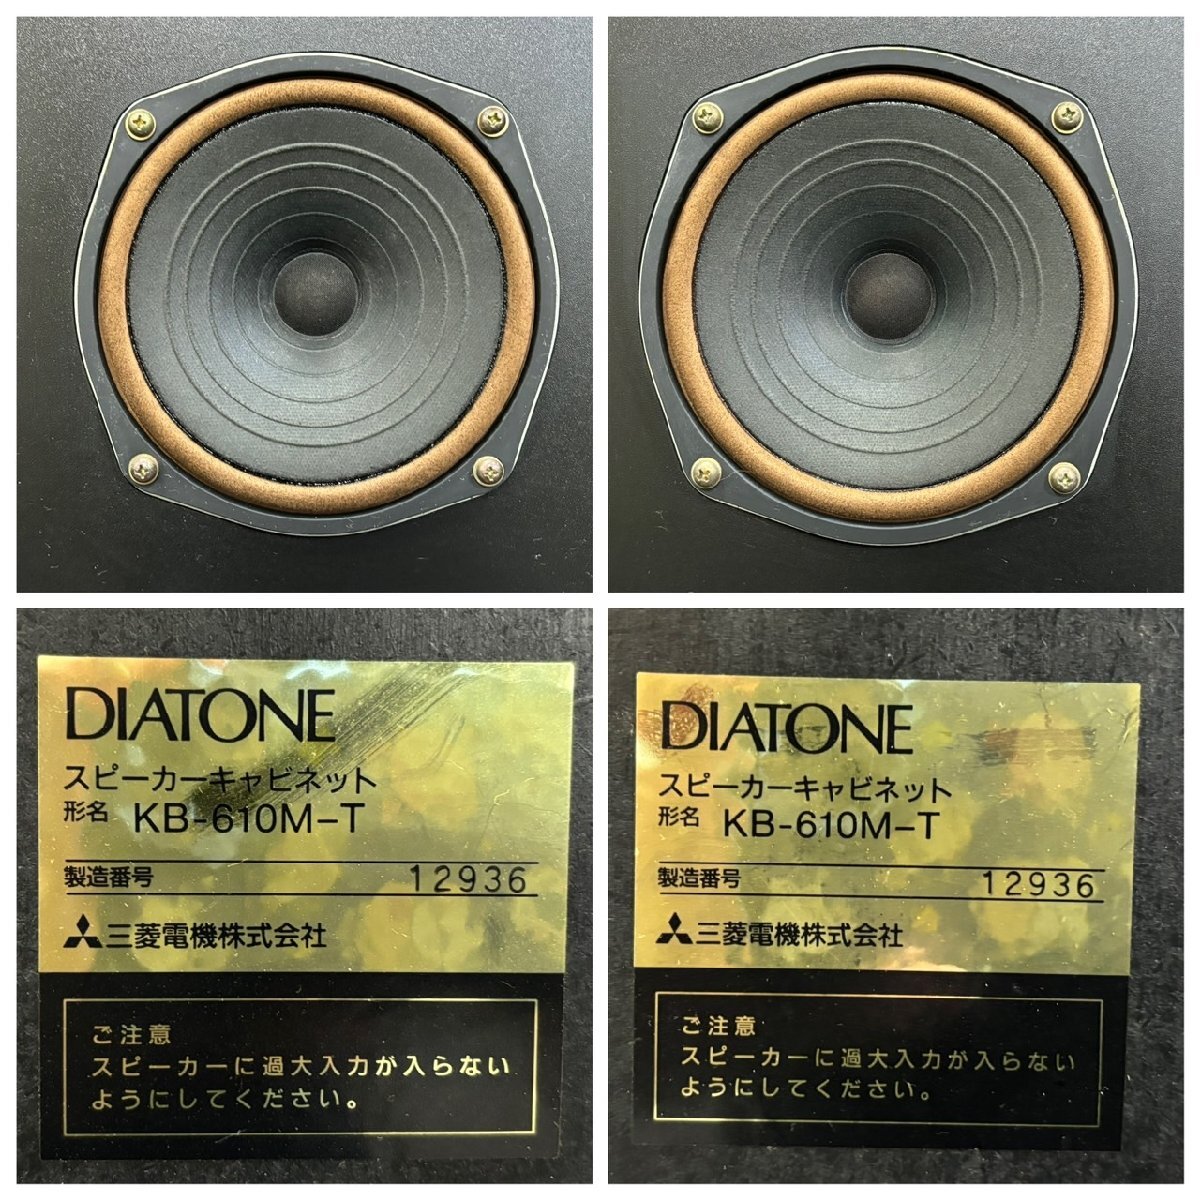 △1045 中古品 オーディオ機器 スピーカー DIATONE KB-610M-T ダイヤトーン ペアの画像9